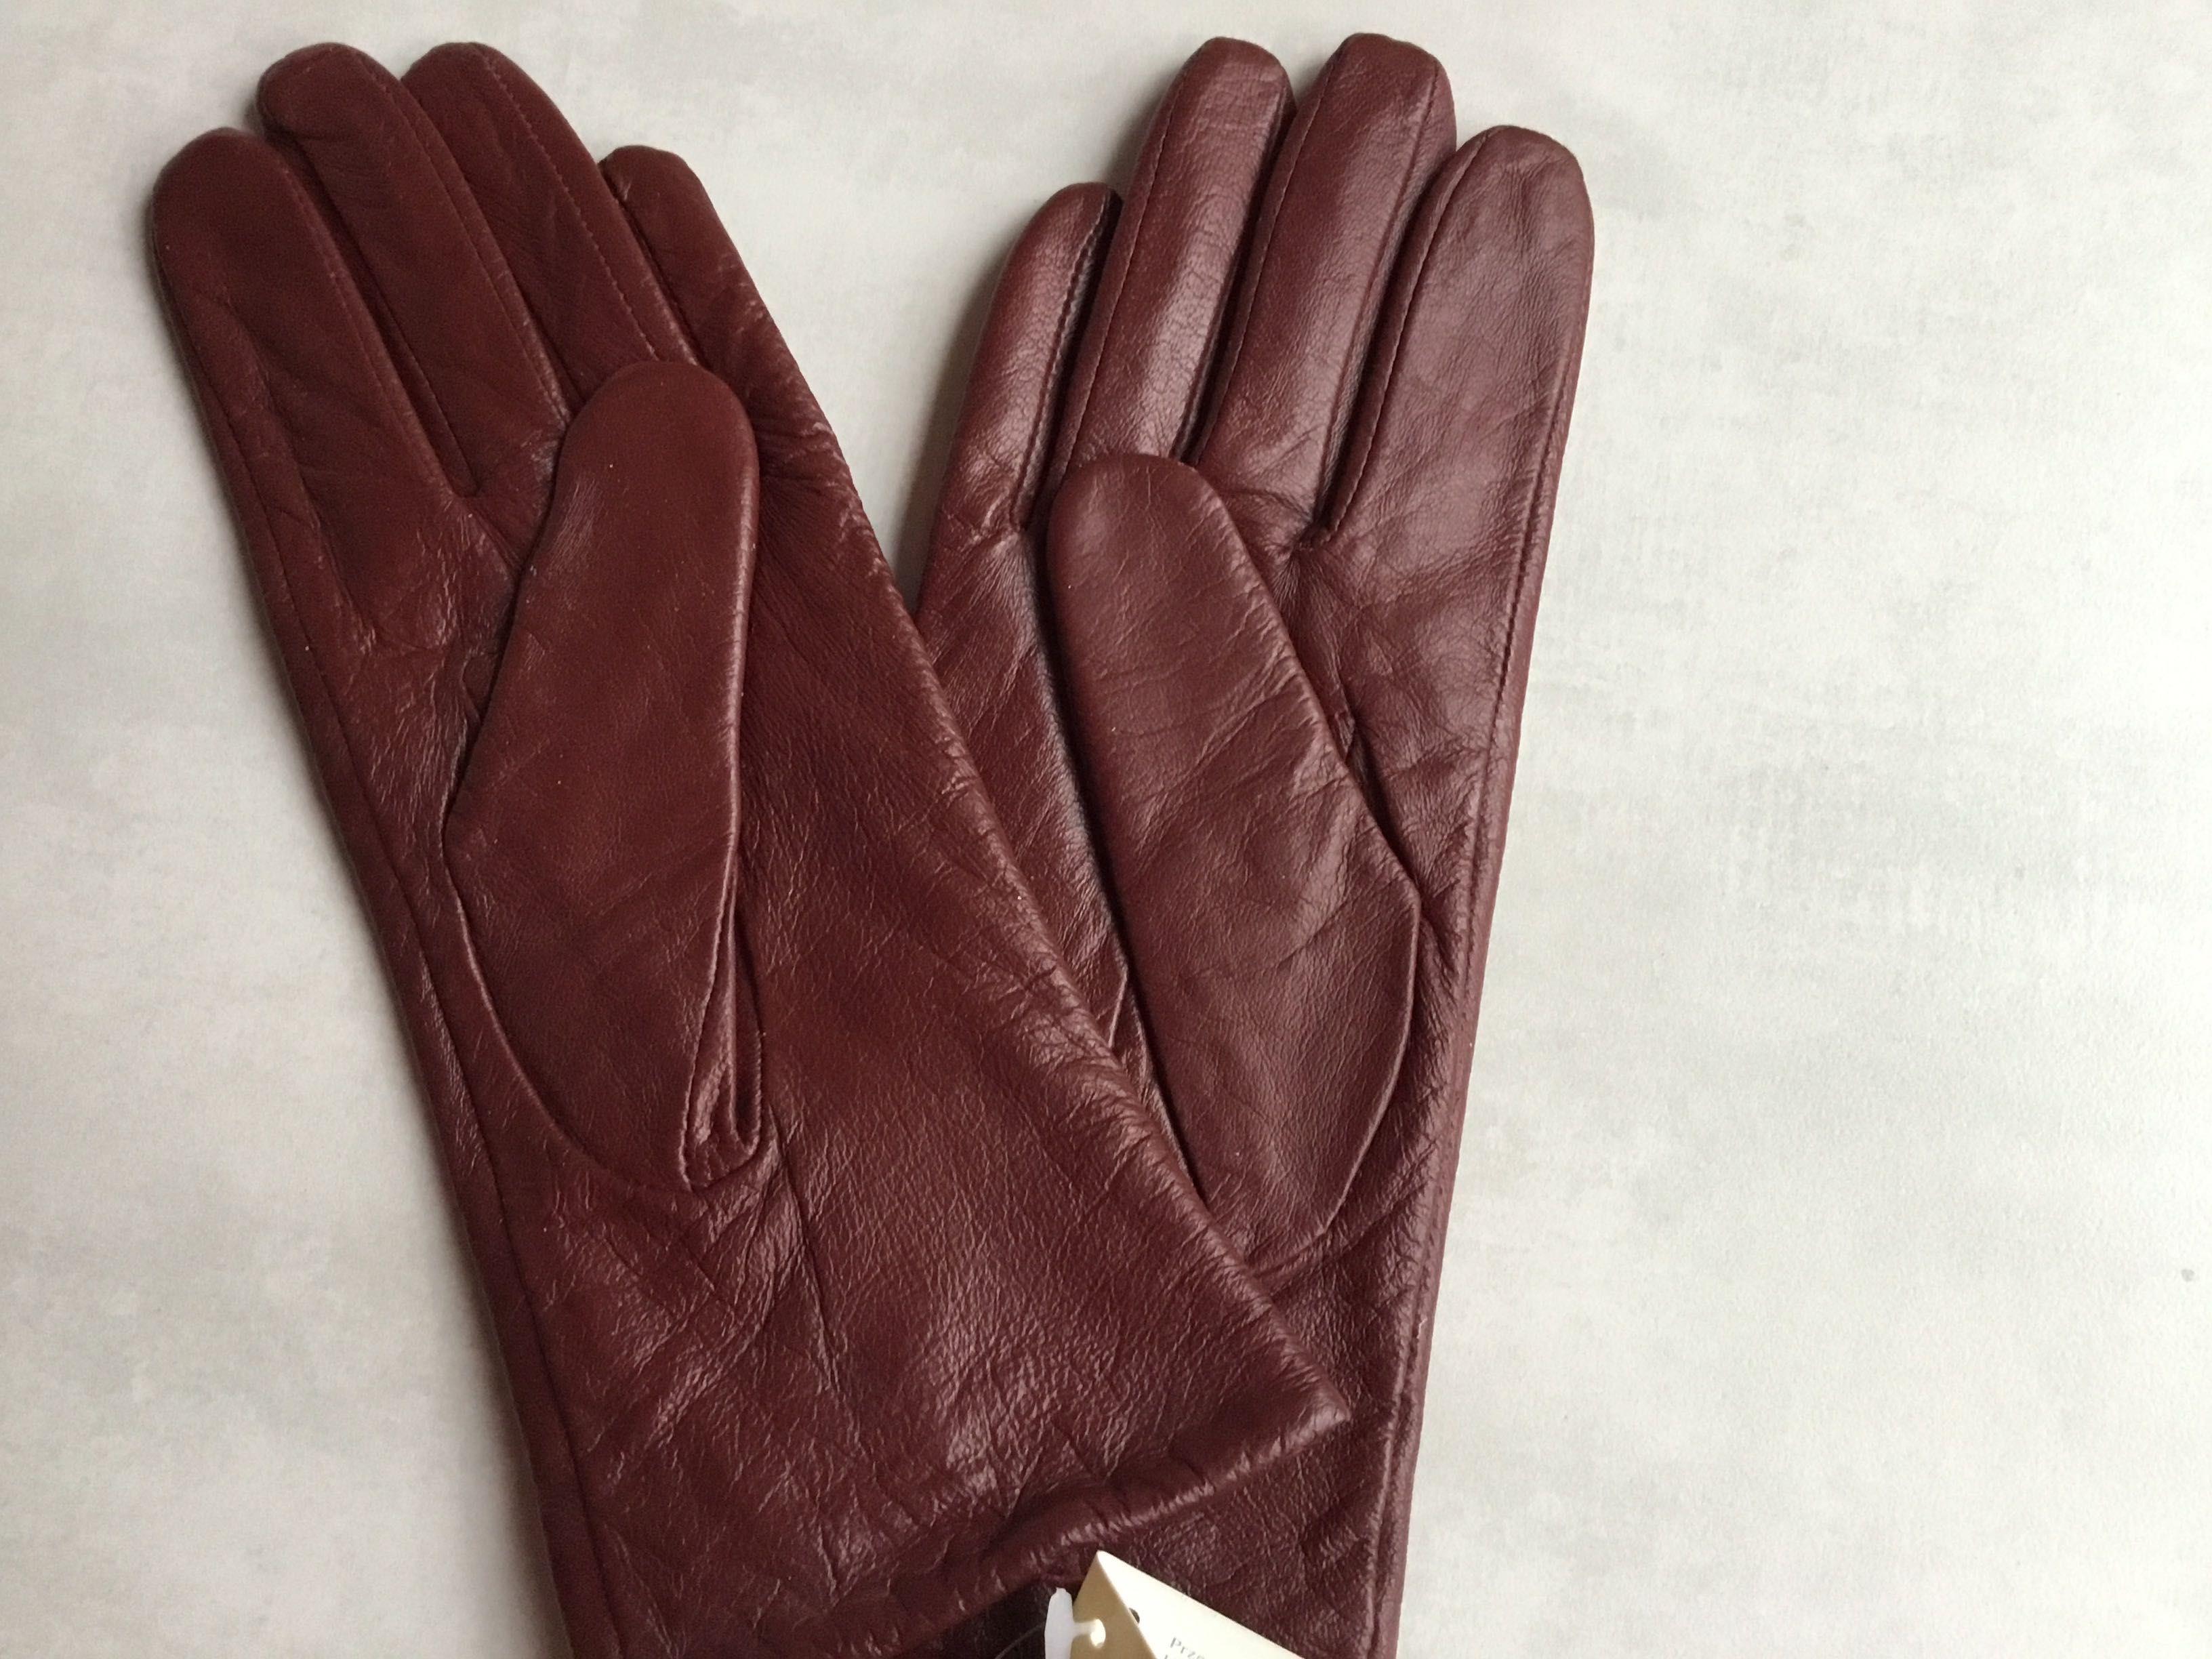 NOWE eleganckie rękawiczki, wysyłka w dniu zakupu